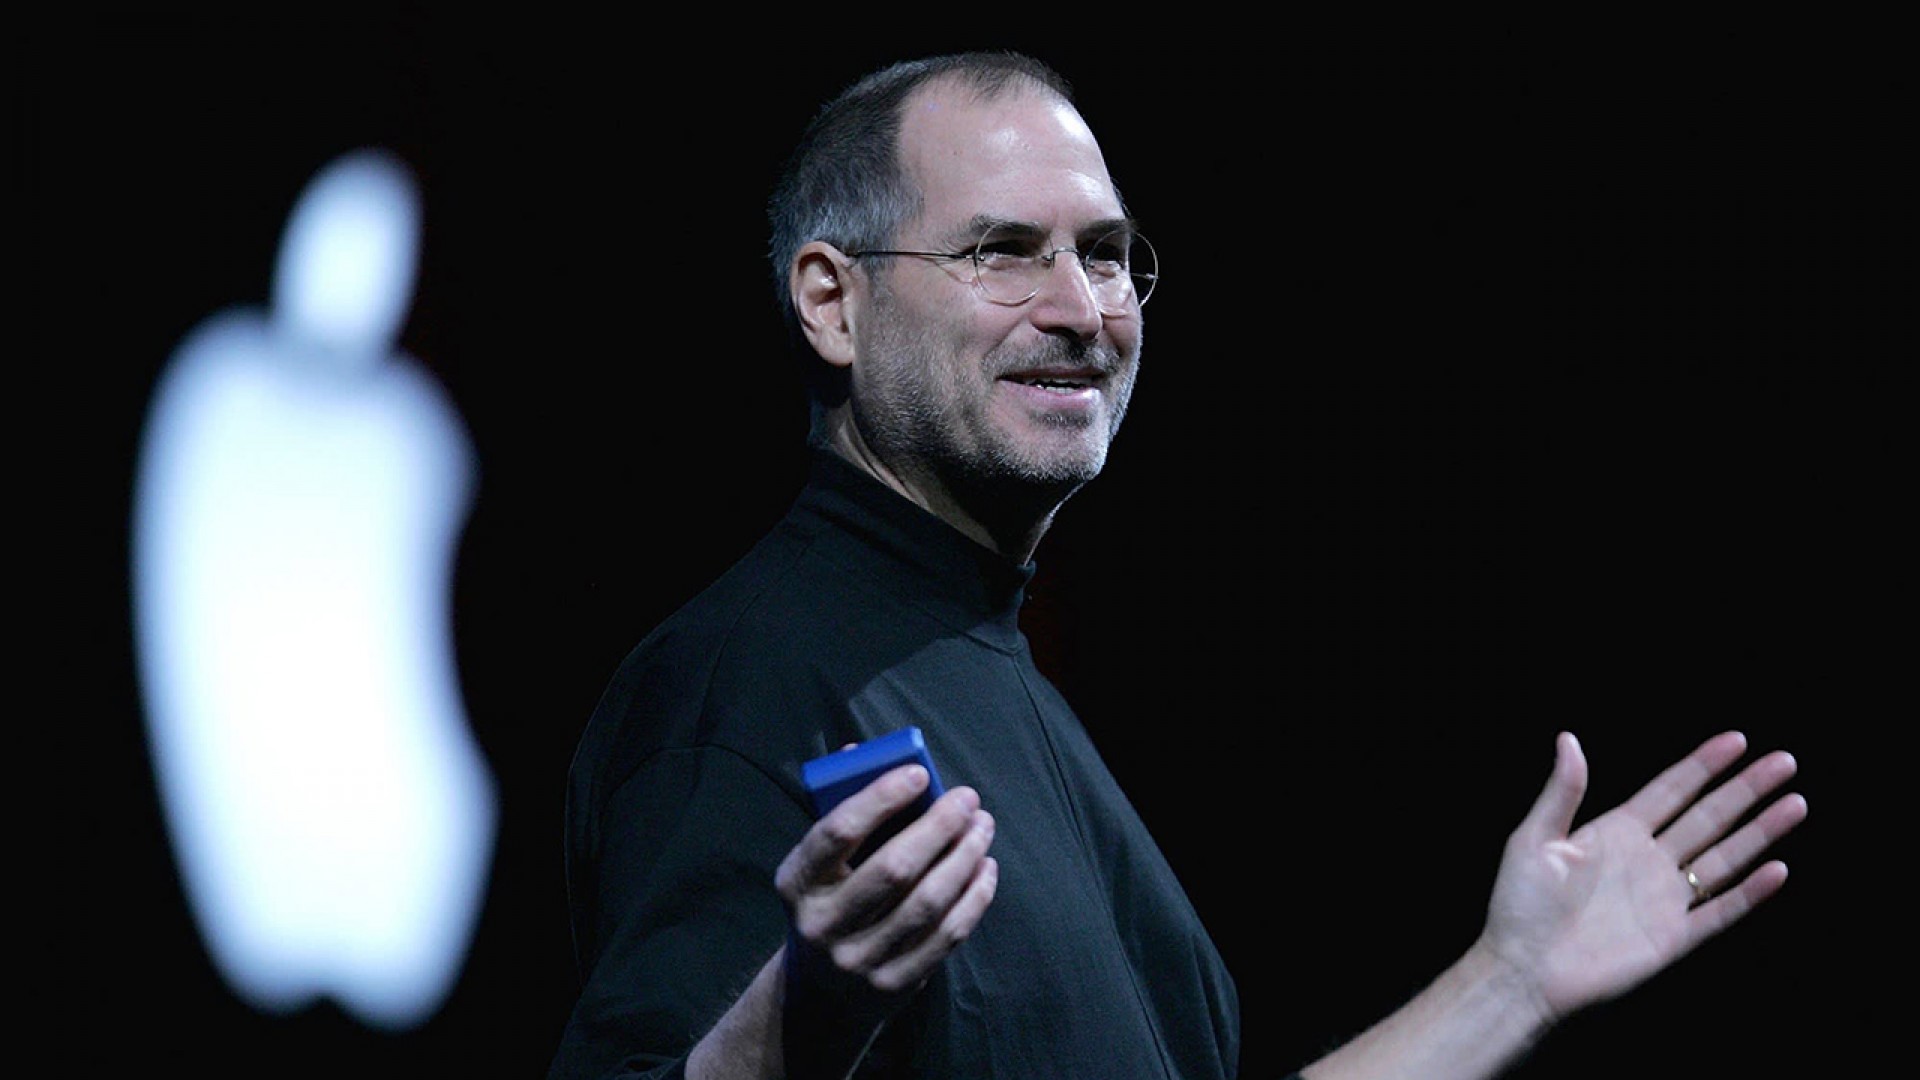 Học tiếng Anh qua những câu nói nổi tiếng của Steve Jobs